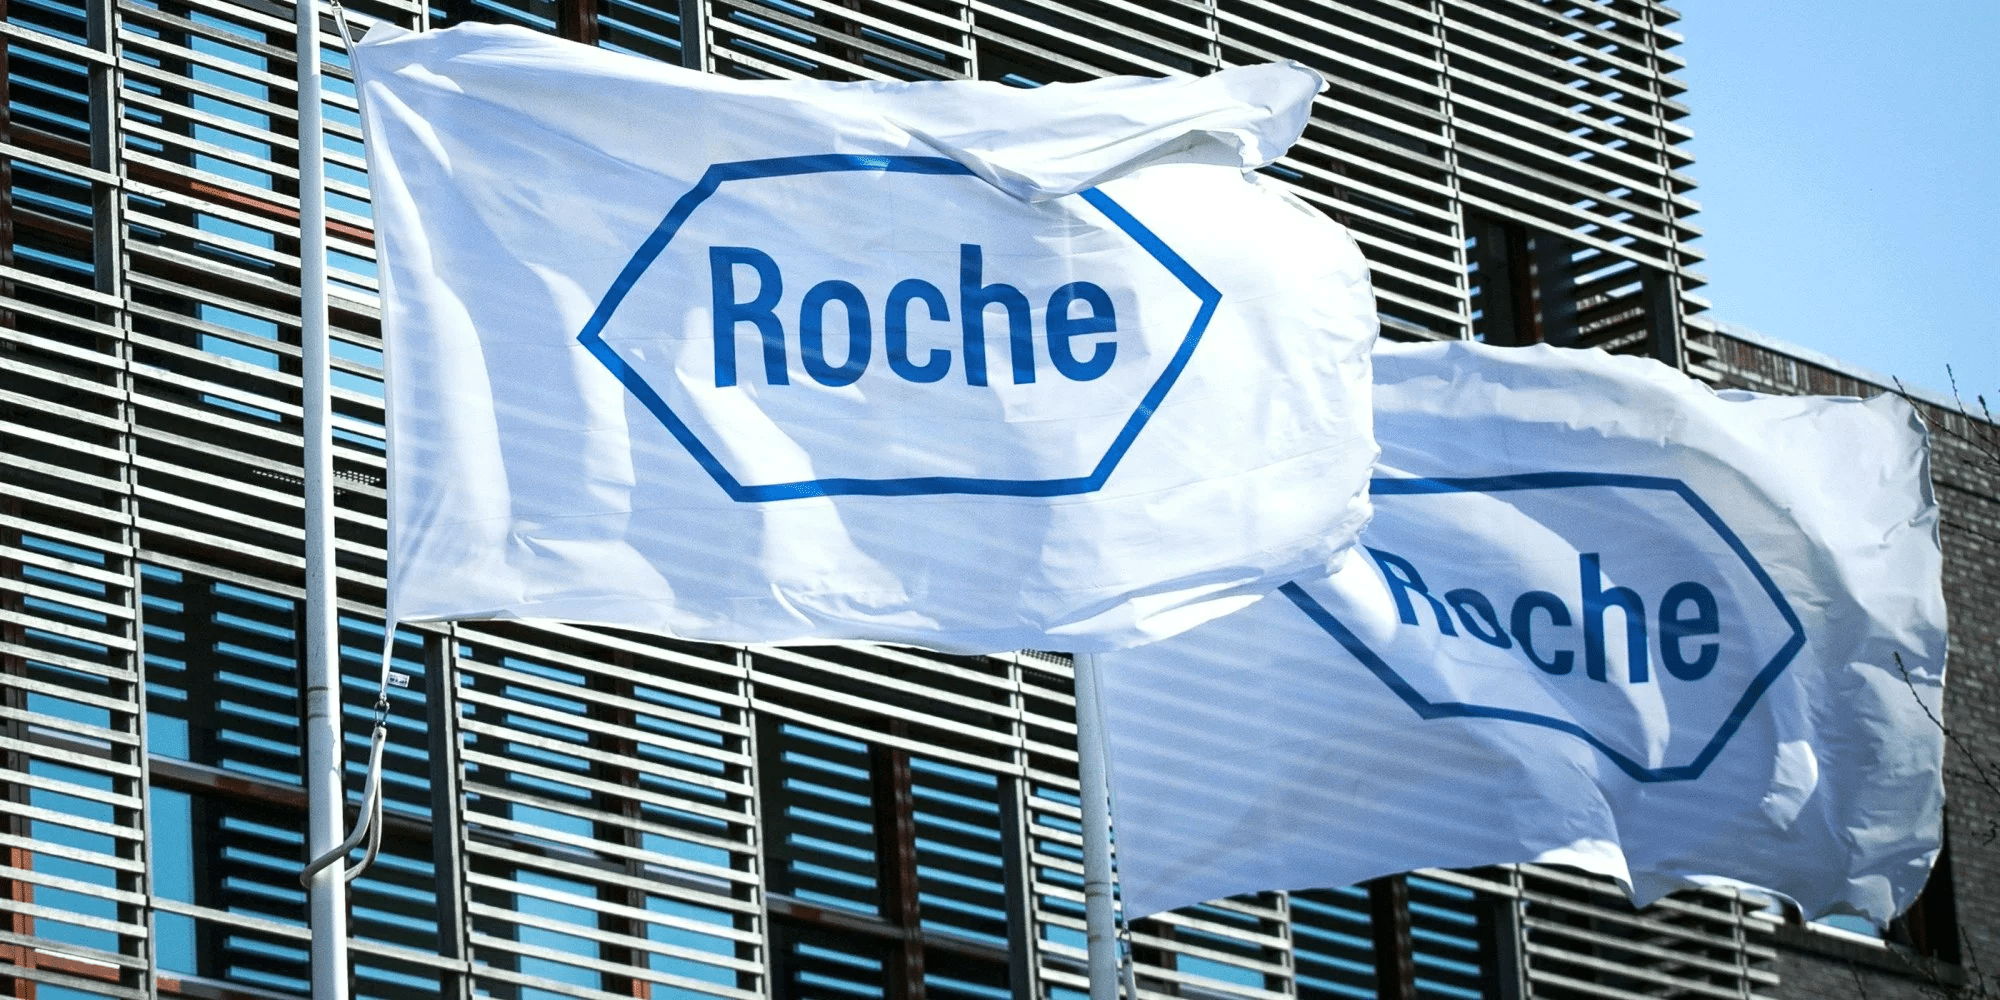 Roche - Mã cổ phiếu với tiềm năng tăng trưởng dài hạn